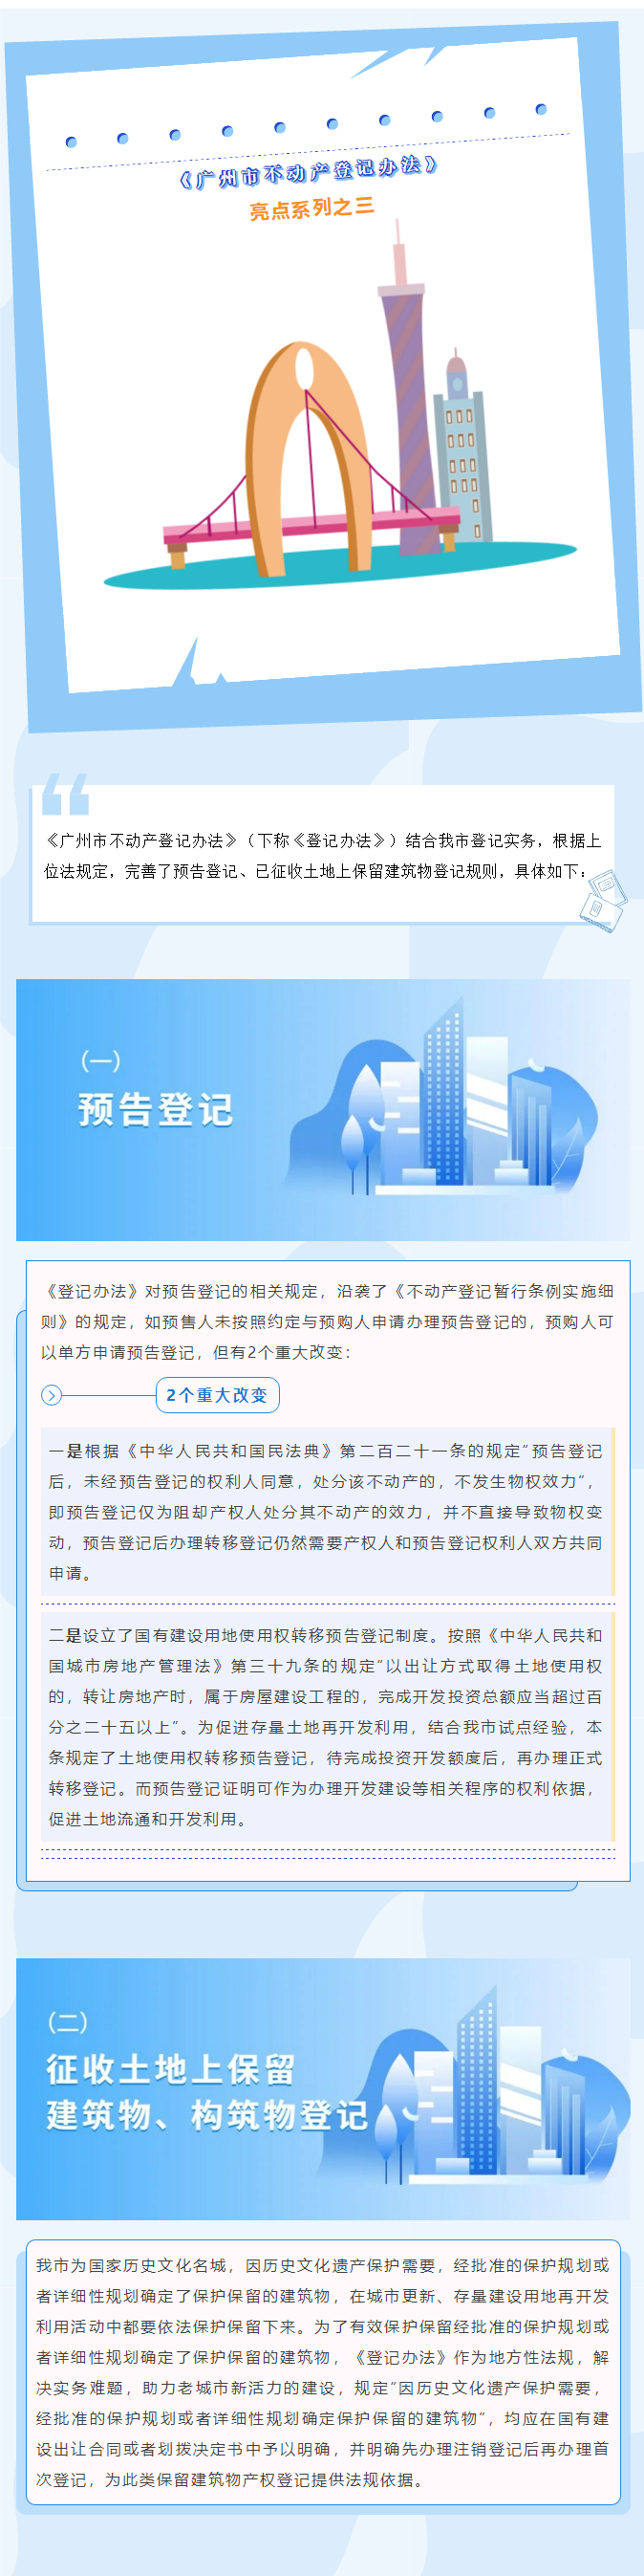 《广州市不动产登记办法》亮点系列之三1.png